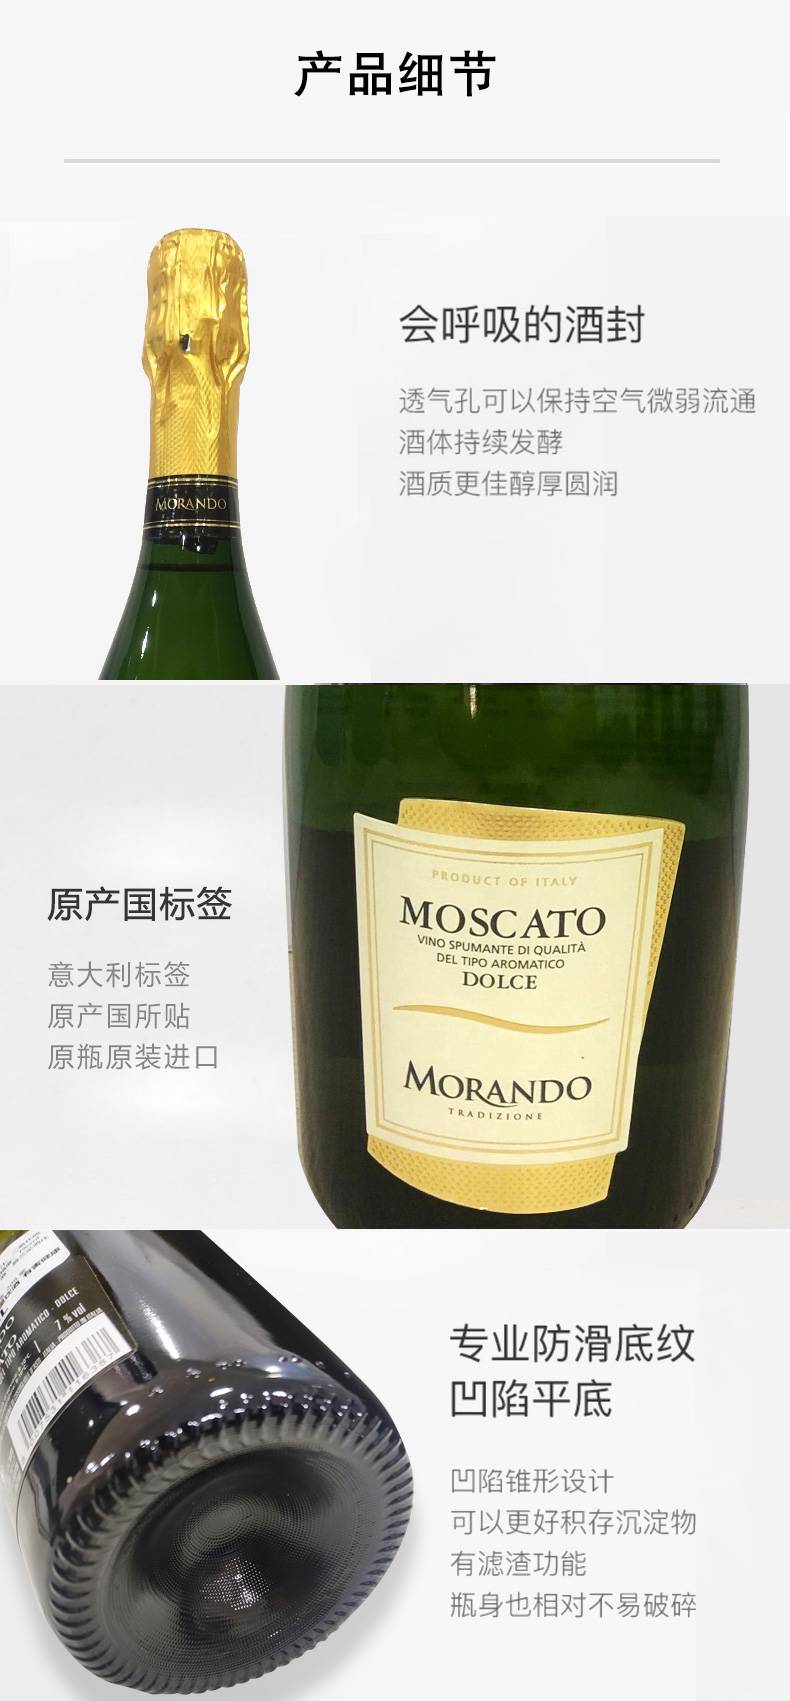  MORANDO 意大利原瓶进口 莫斯卡托甜型高泡起泡酒 双支礼盒装 750ml*2